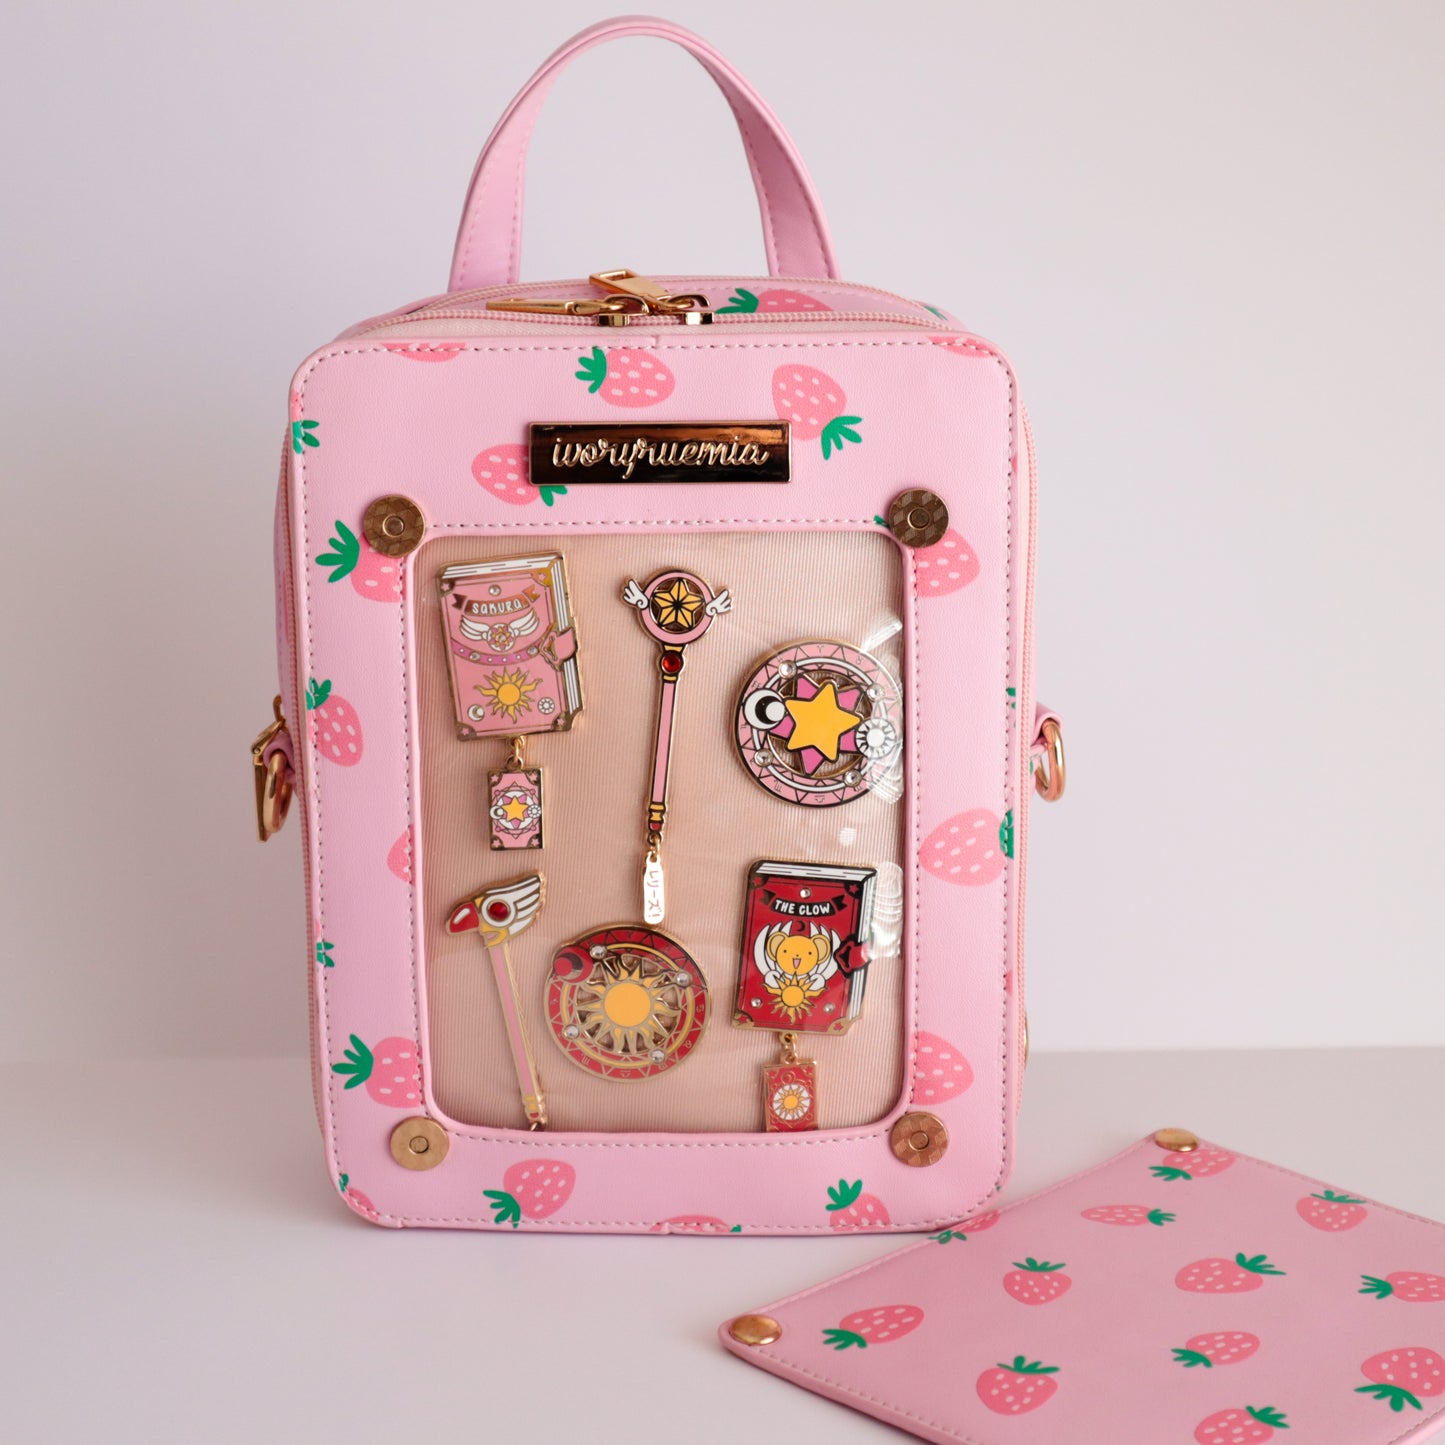 Petal Pink | Window Cover Ita Bag